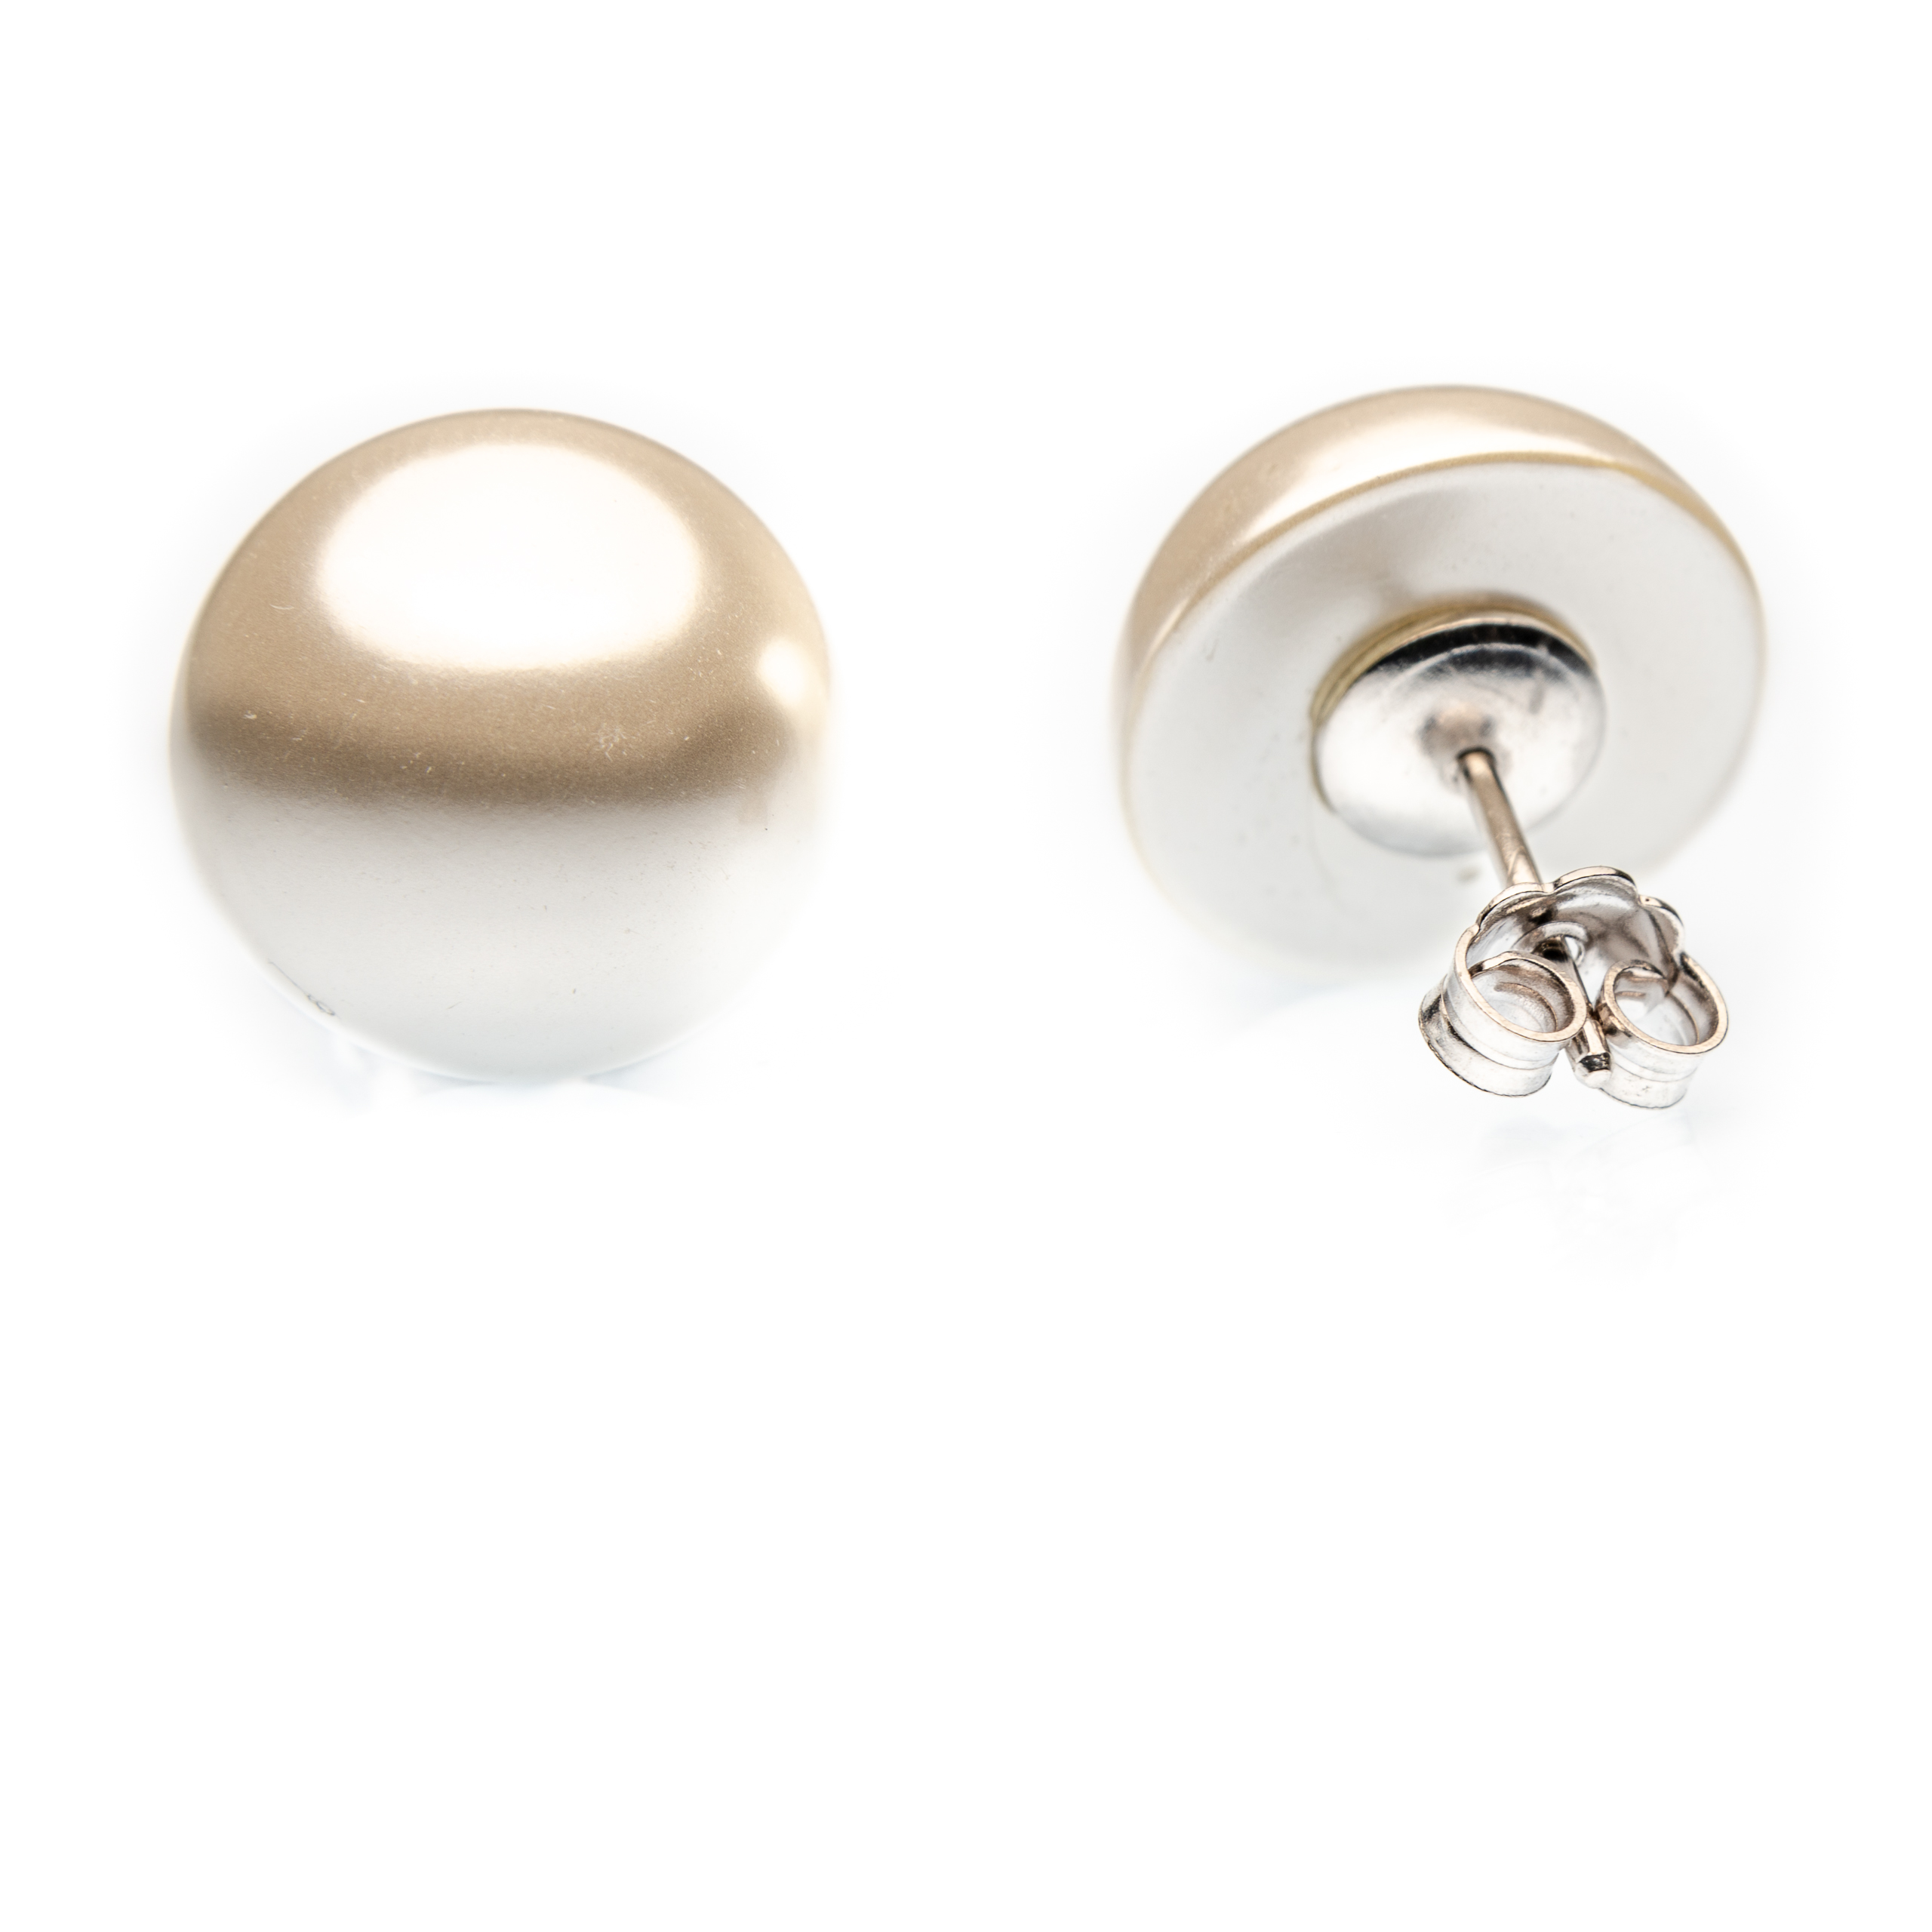 Half pearl earrings